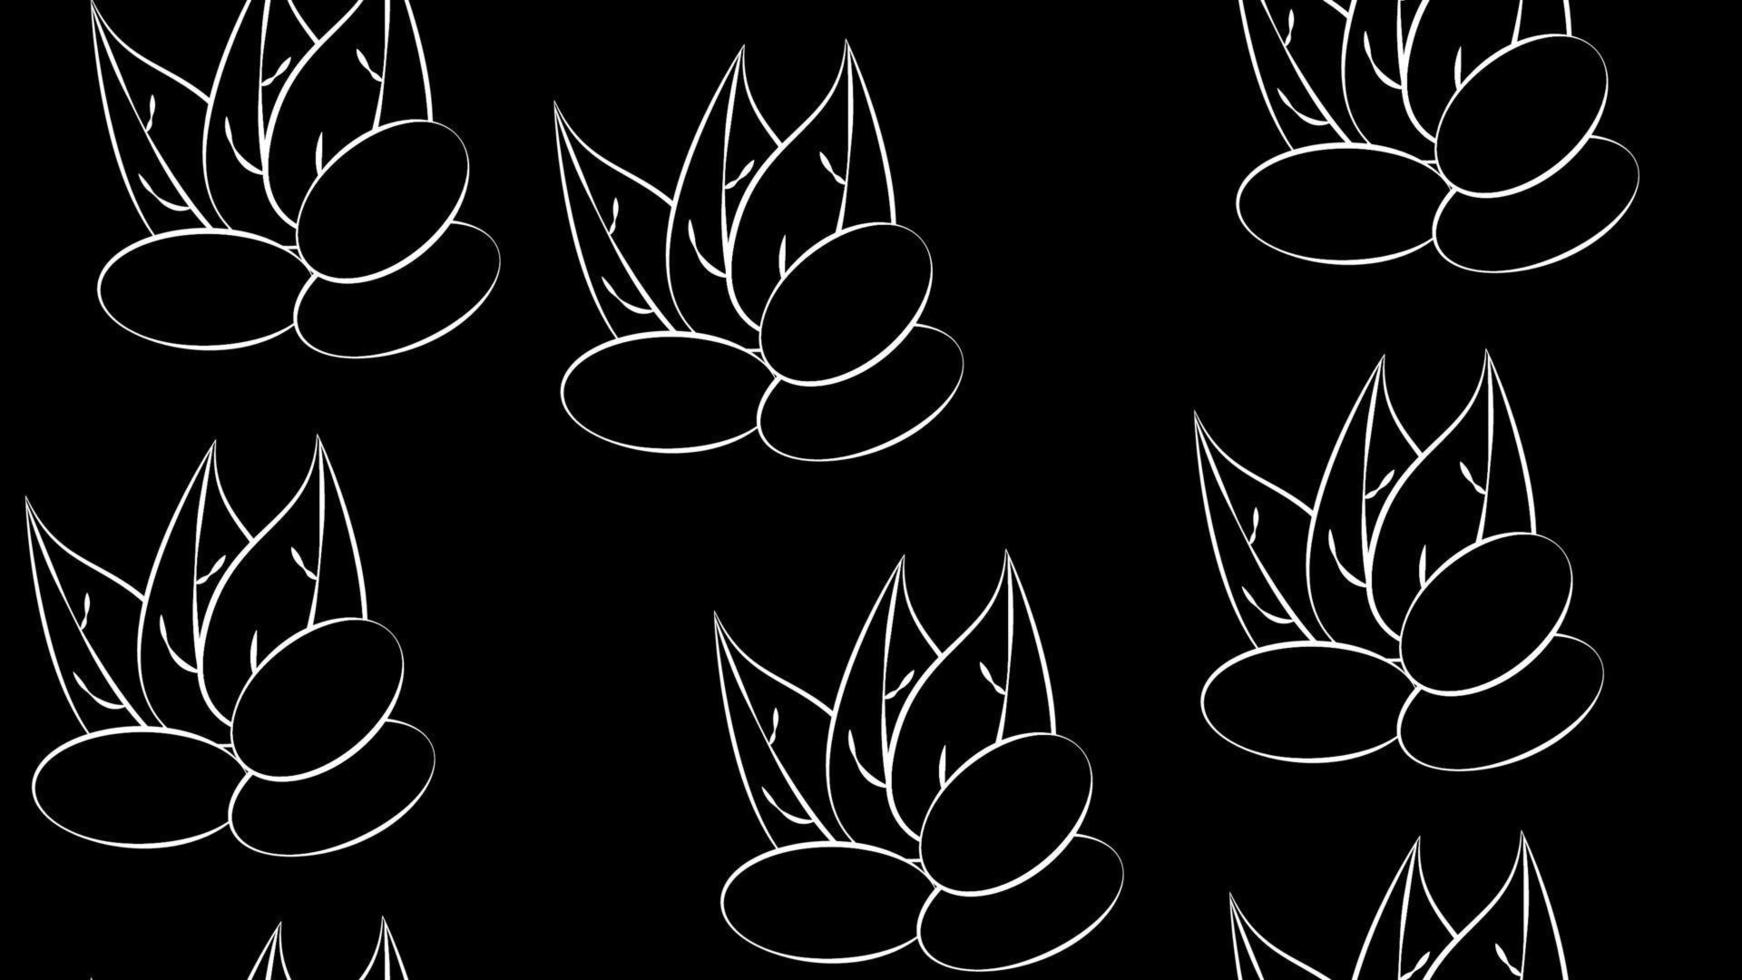 abstraktes, nahtloses Muster einer Reihe von Mandelkernen, für Menüdesign oder Süßwaren, Textilien, Vektorillustration mit farbigen Konturlinien auf cremigem Hintergrund im handgezeichneten Doodle-Stil vektor